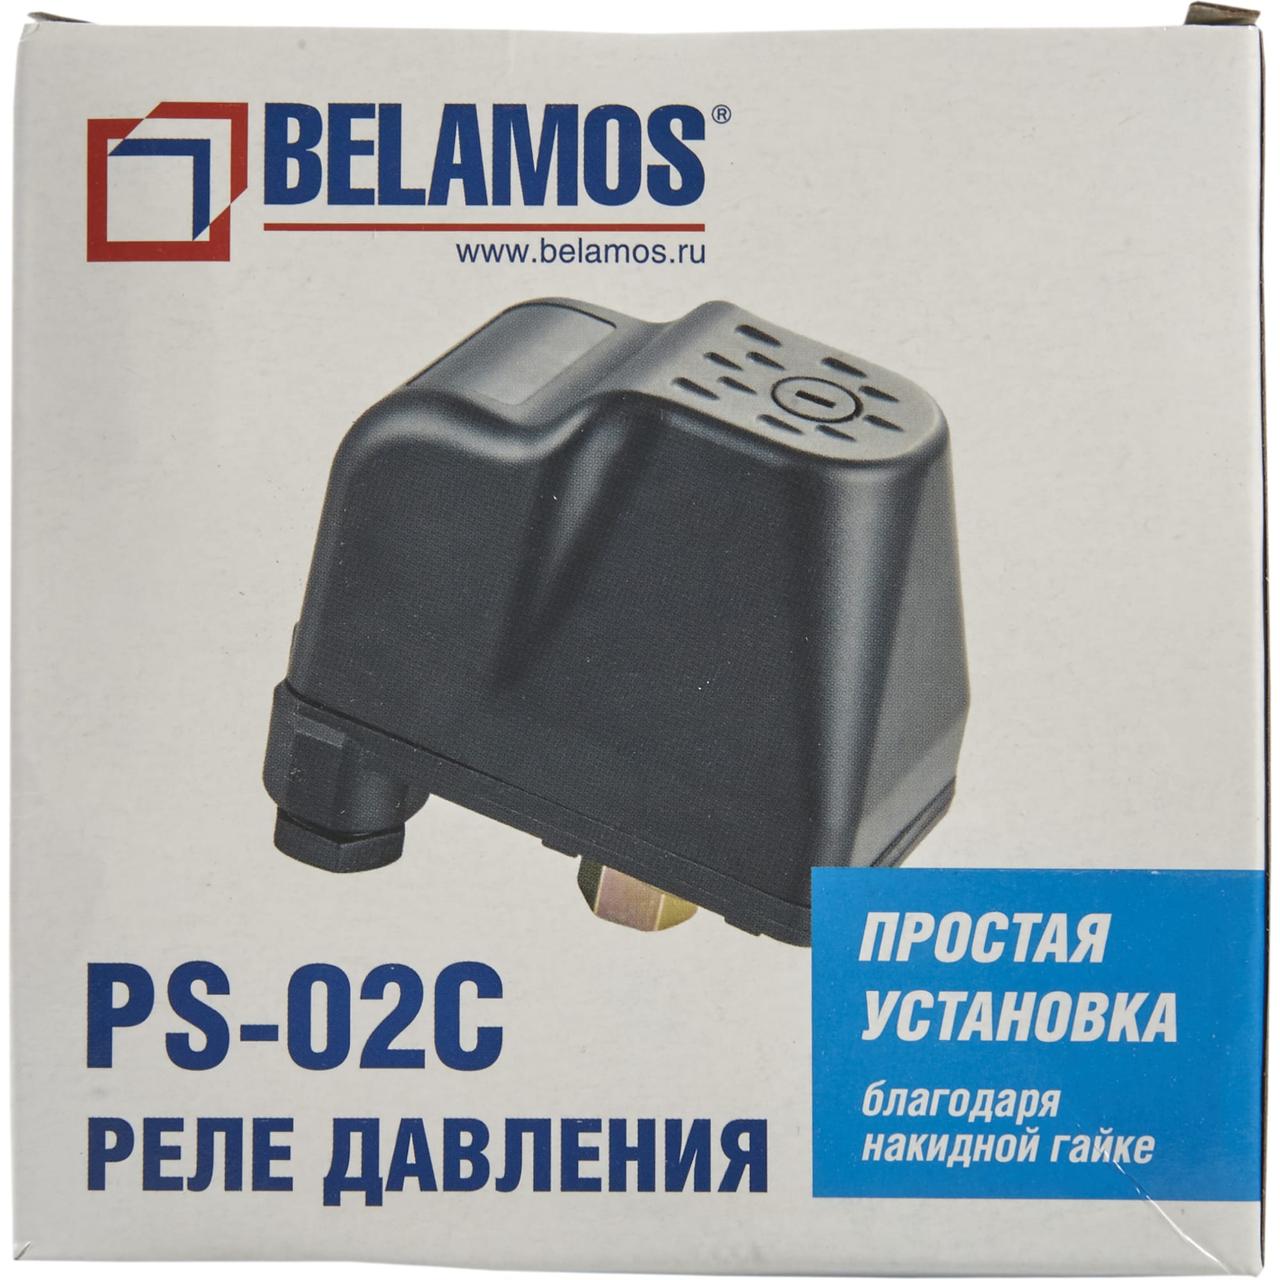 Реле давления PS-02c Беламос. Реле давления Беламос PS-02. Реле давления воды PS-02c. Реле давления belamos PR-10. Реле давления воды ps 07a